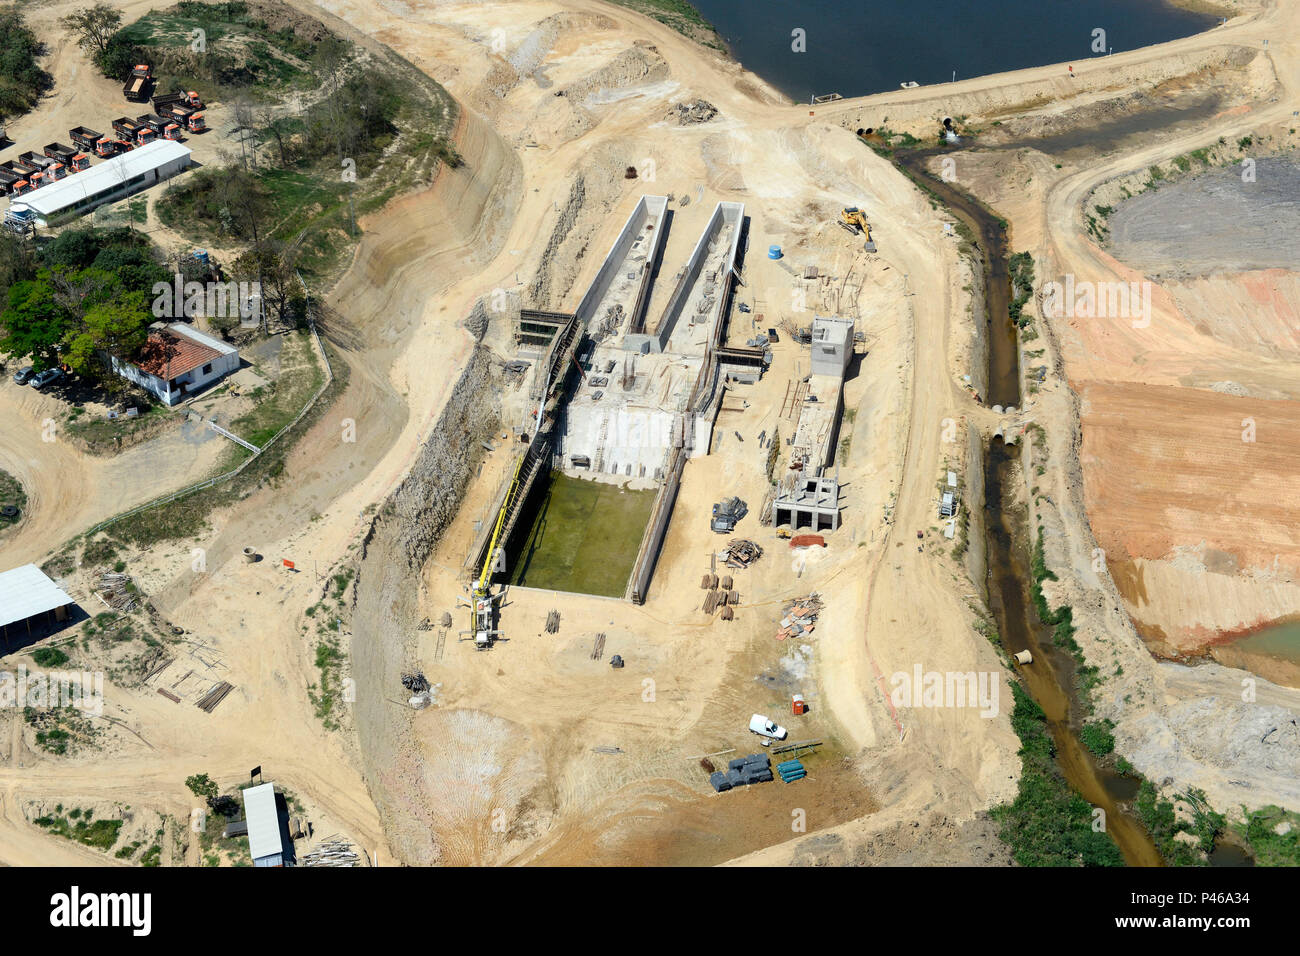 Orçada em R$ 24,5 milhões, com prazo de execução de dois anos, a Barragem do Rio Capivari-Mirim, será construída no Bairro Mirim, dando origem a um lago com capacidade para armazenar 880 milhões de litros. A Barragem terá 260 metros de comprimento, 6 metros de largura, 23 metros de altura máxima sobre a fundação e espelho-d’água de 41,1 hectares (411 mil m2). A extensão de espelho d´água é de 2,5 km. Indaiatuba/SP, Brasil - 12/09/2014. Foto: Giuliano Miranda/Fotoarena Stock Photo